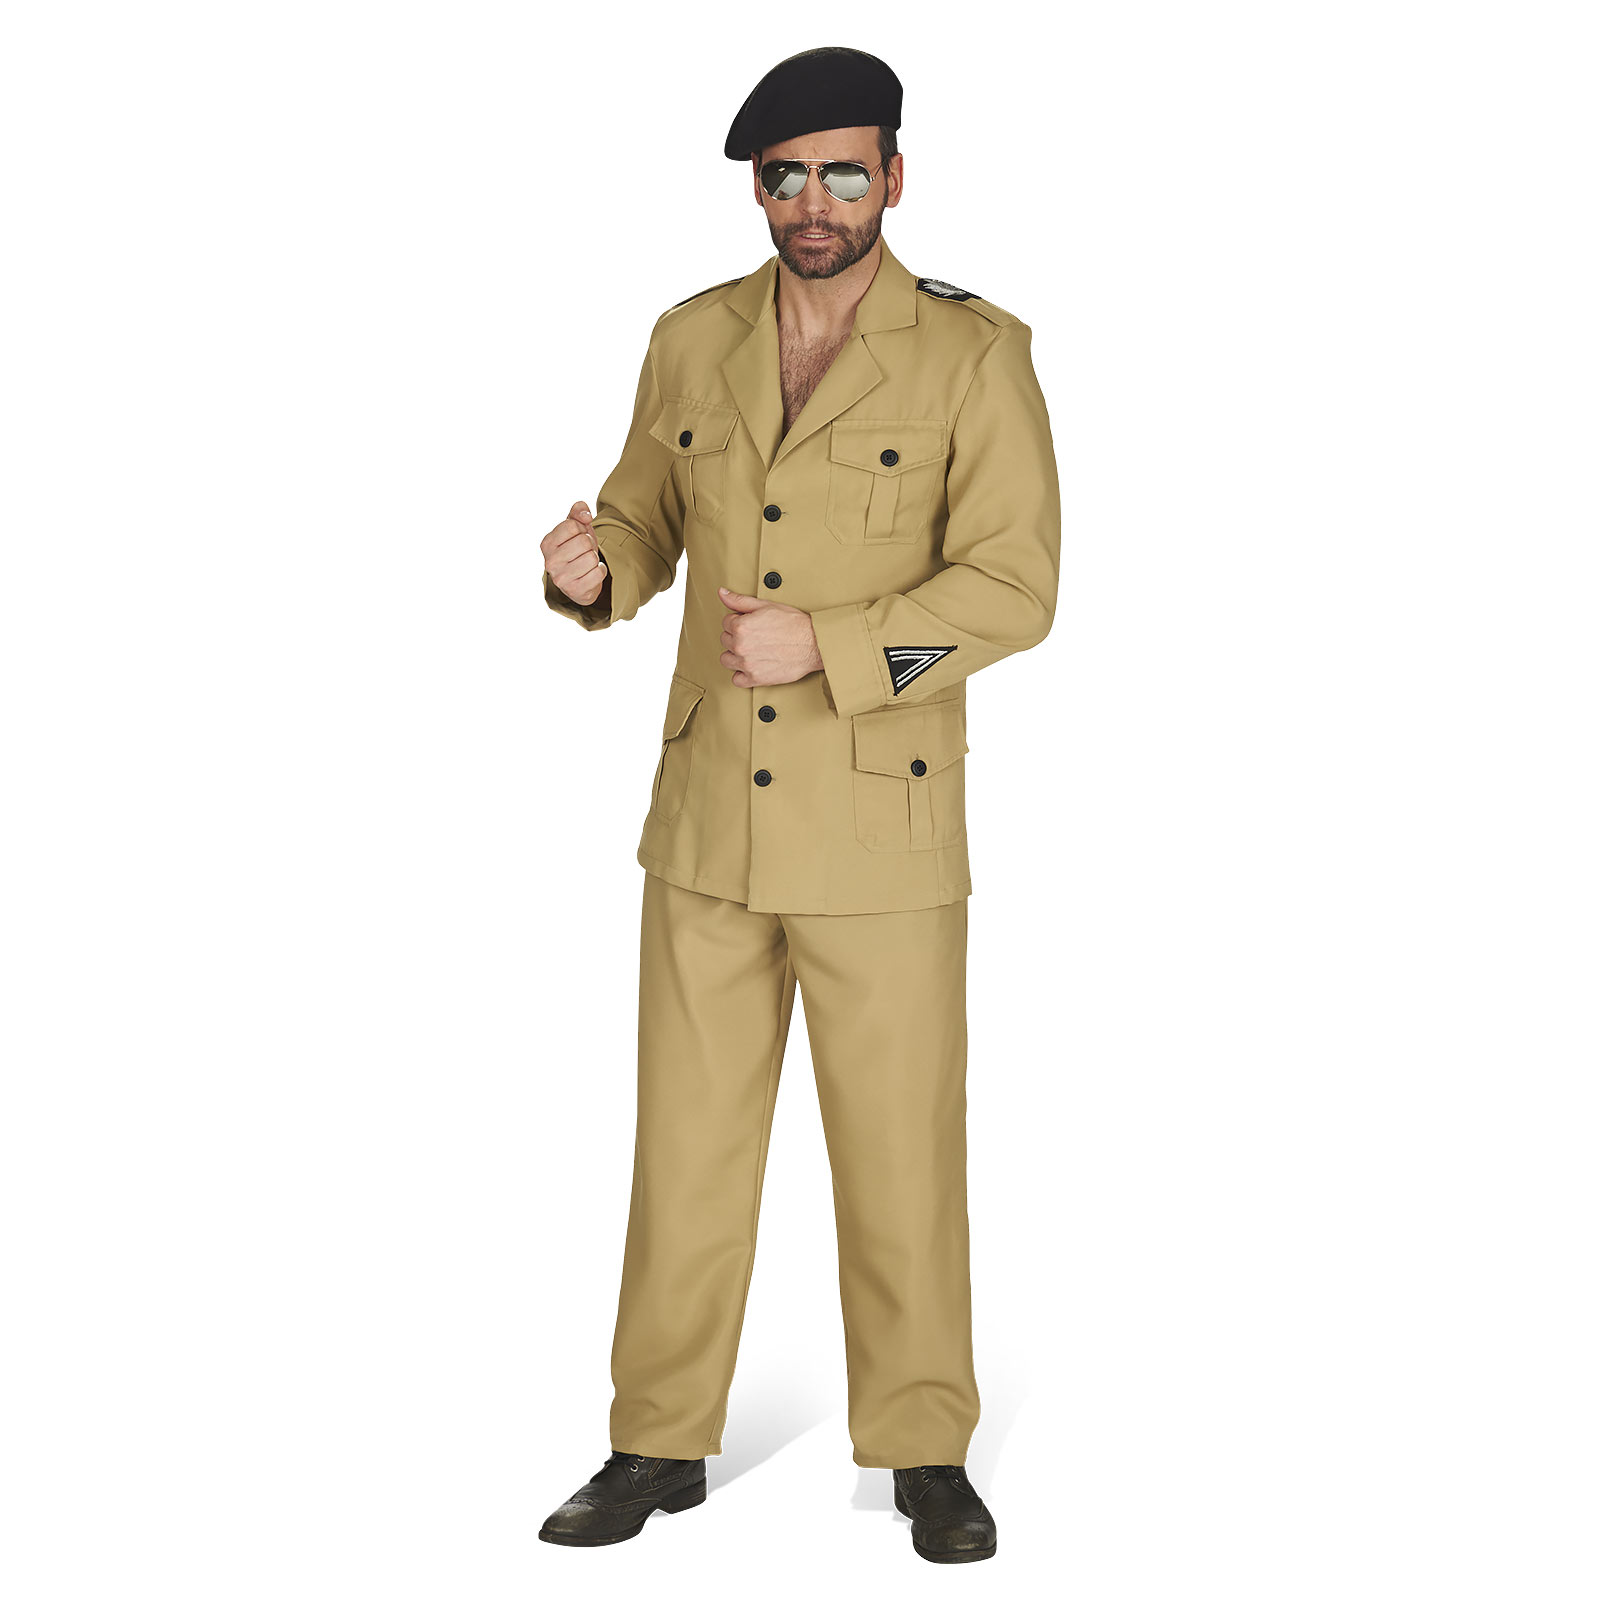 Brown Uniform - Men's Costume